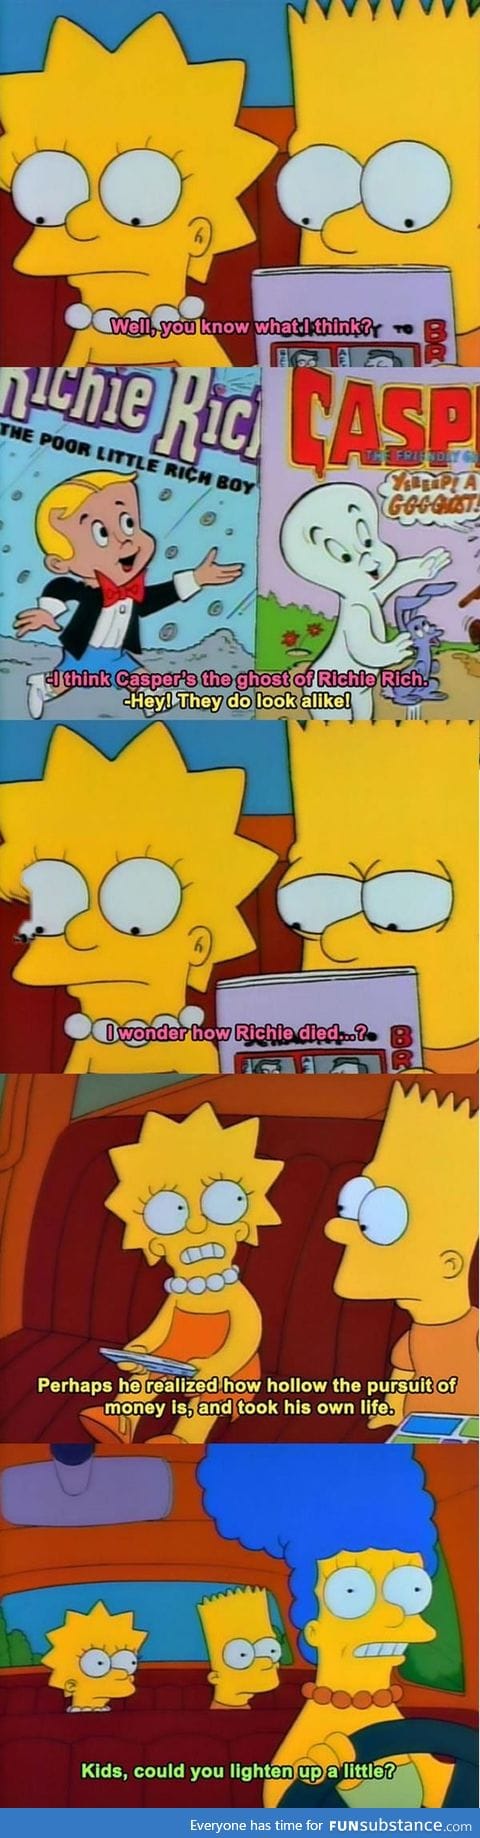 Simpsons was deep